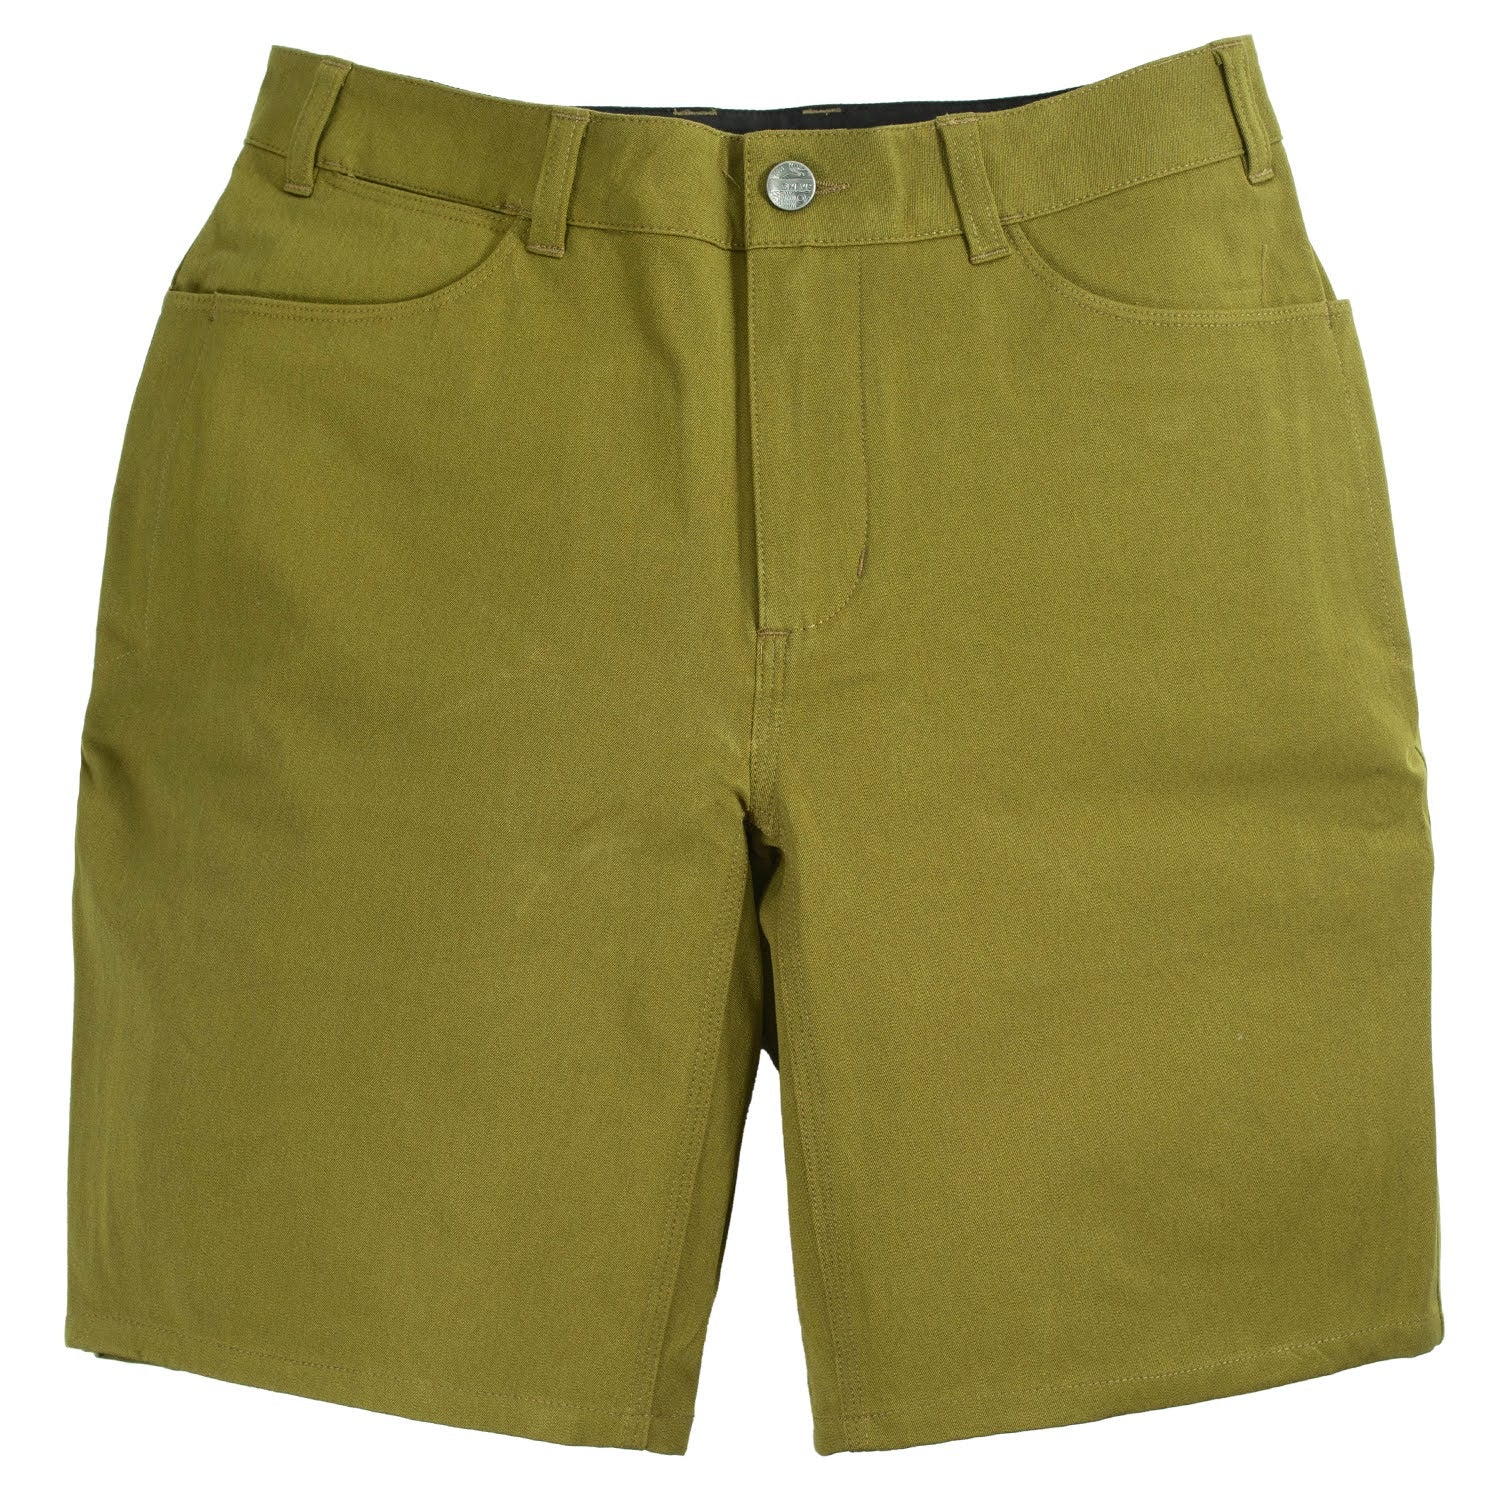 SWRVE Durable Cotton Trouser Shorts